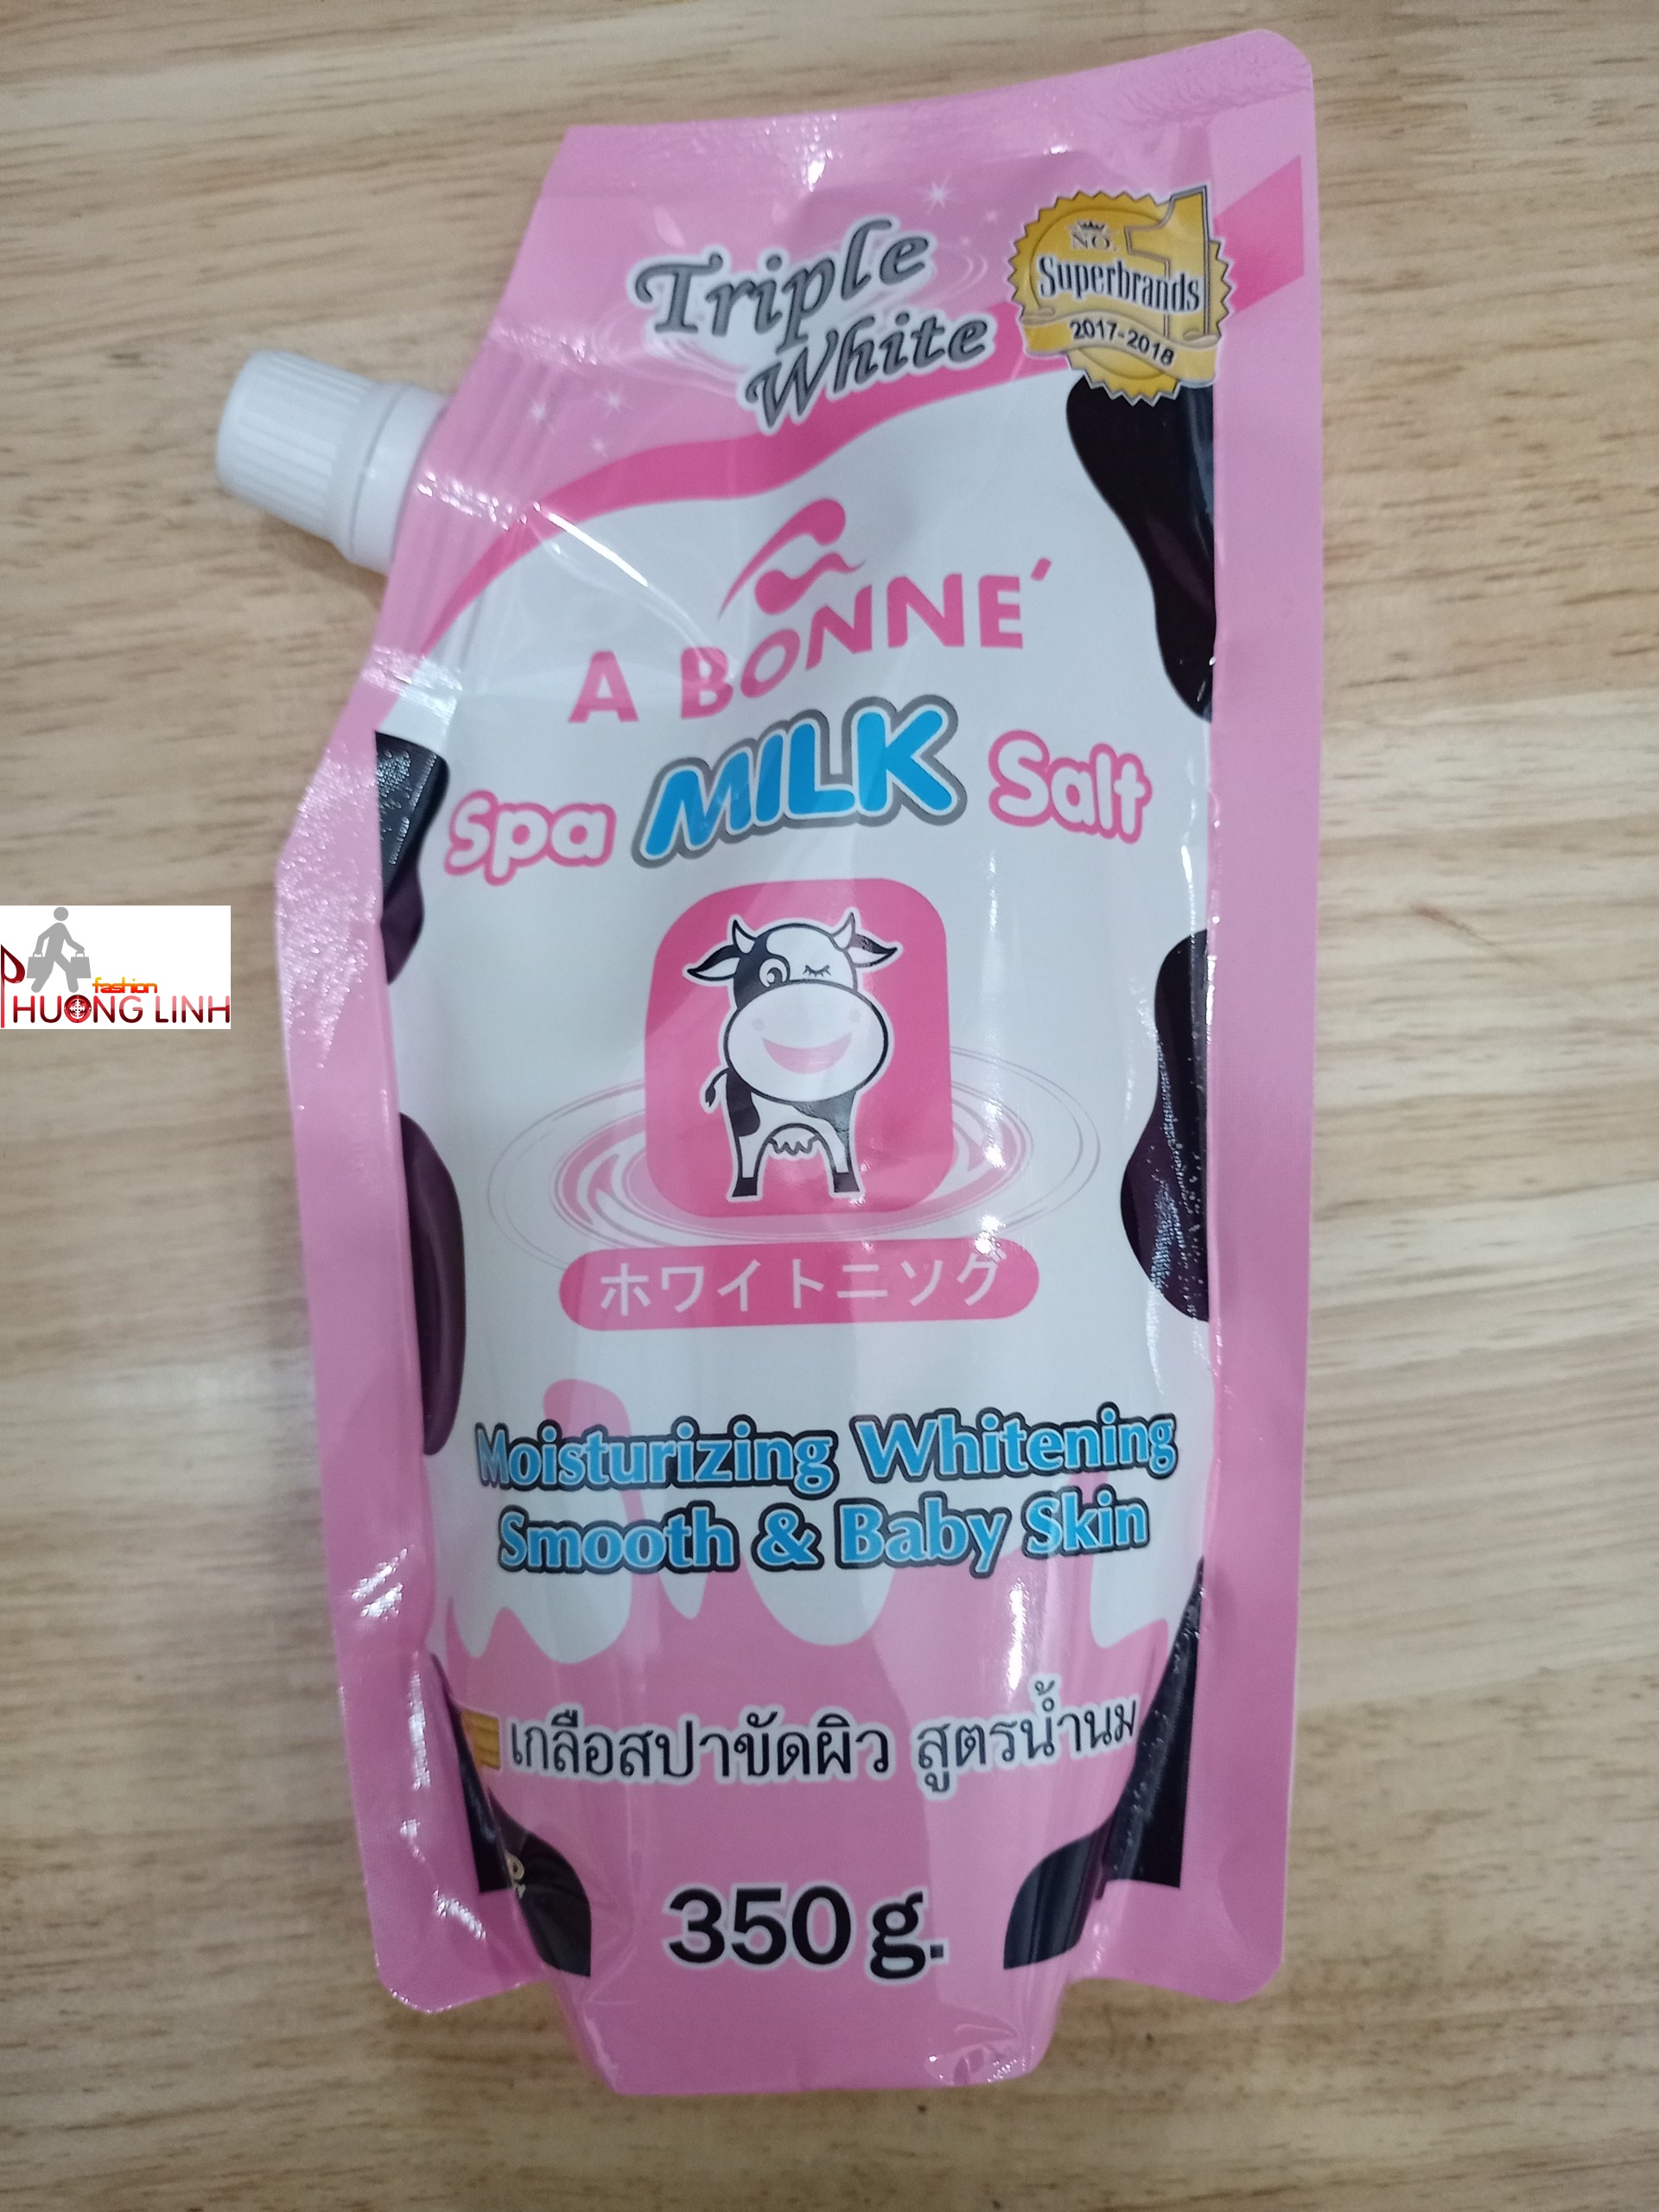 HCMMuối tắm sữa bò tẩy tế bào chết A Bonne Spa Milk Salt Thái Lan 350g